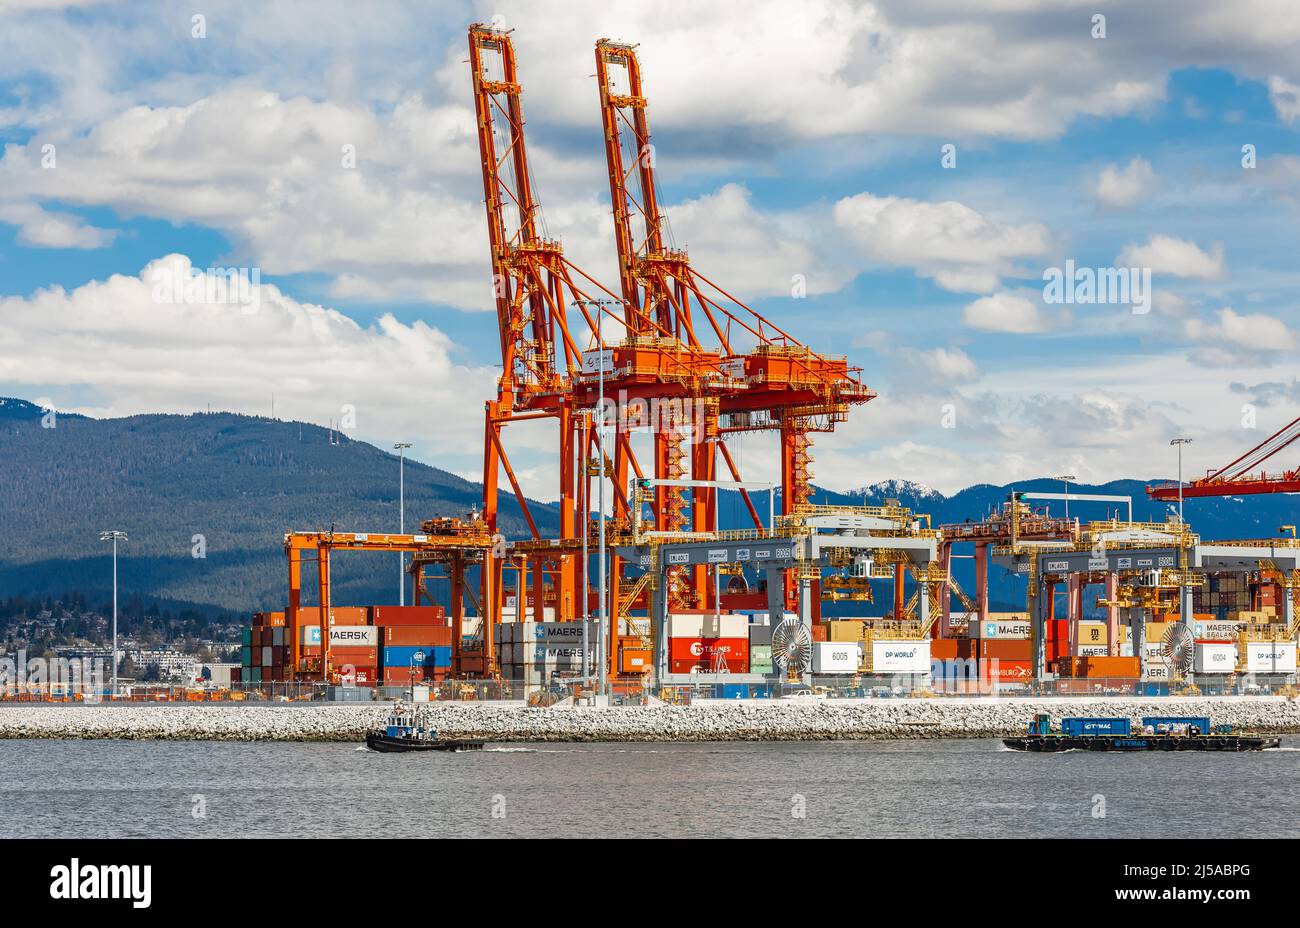 Containerhafenterminal in Vancouver BC, Kanada - einer der drei wichtigsten Häfen an der Westküste Nordamerikas - August 15,2021. Blick auf die Straße, Reise phot Stockfoto